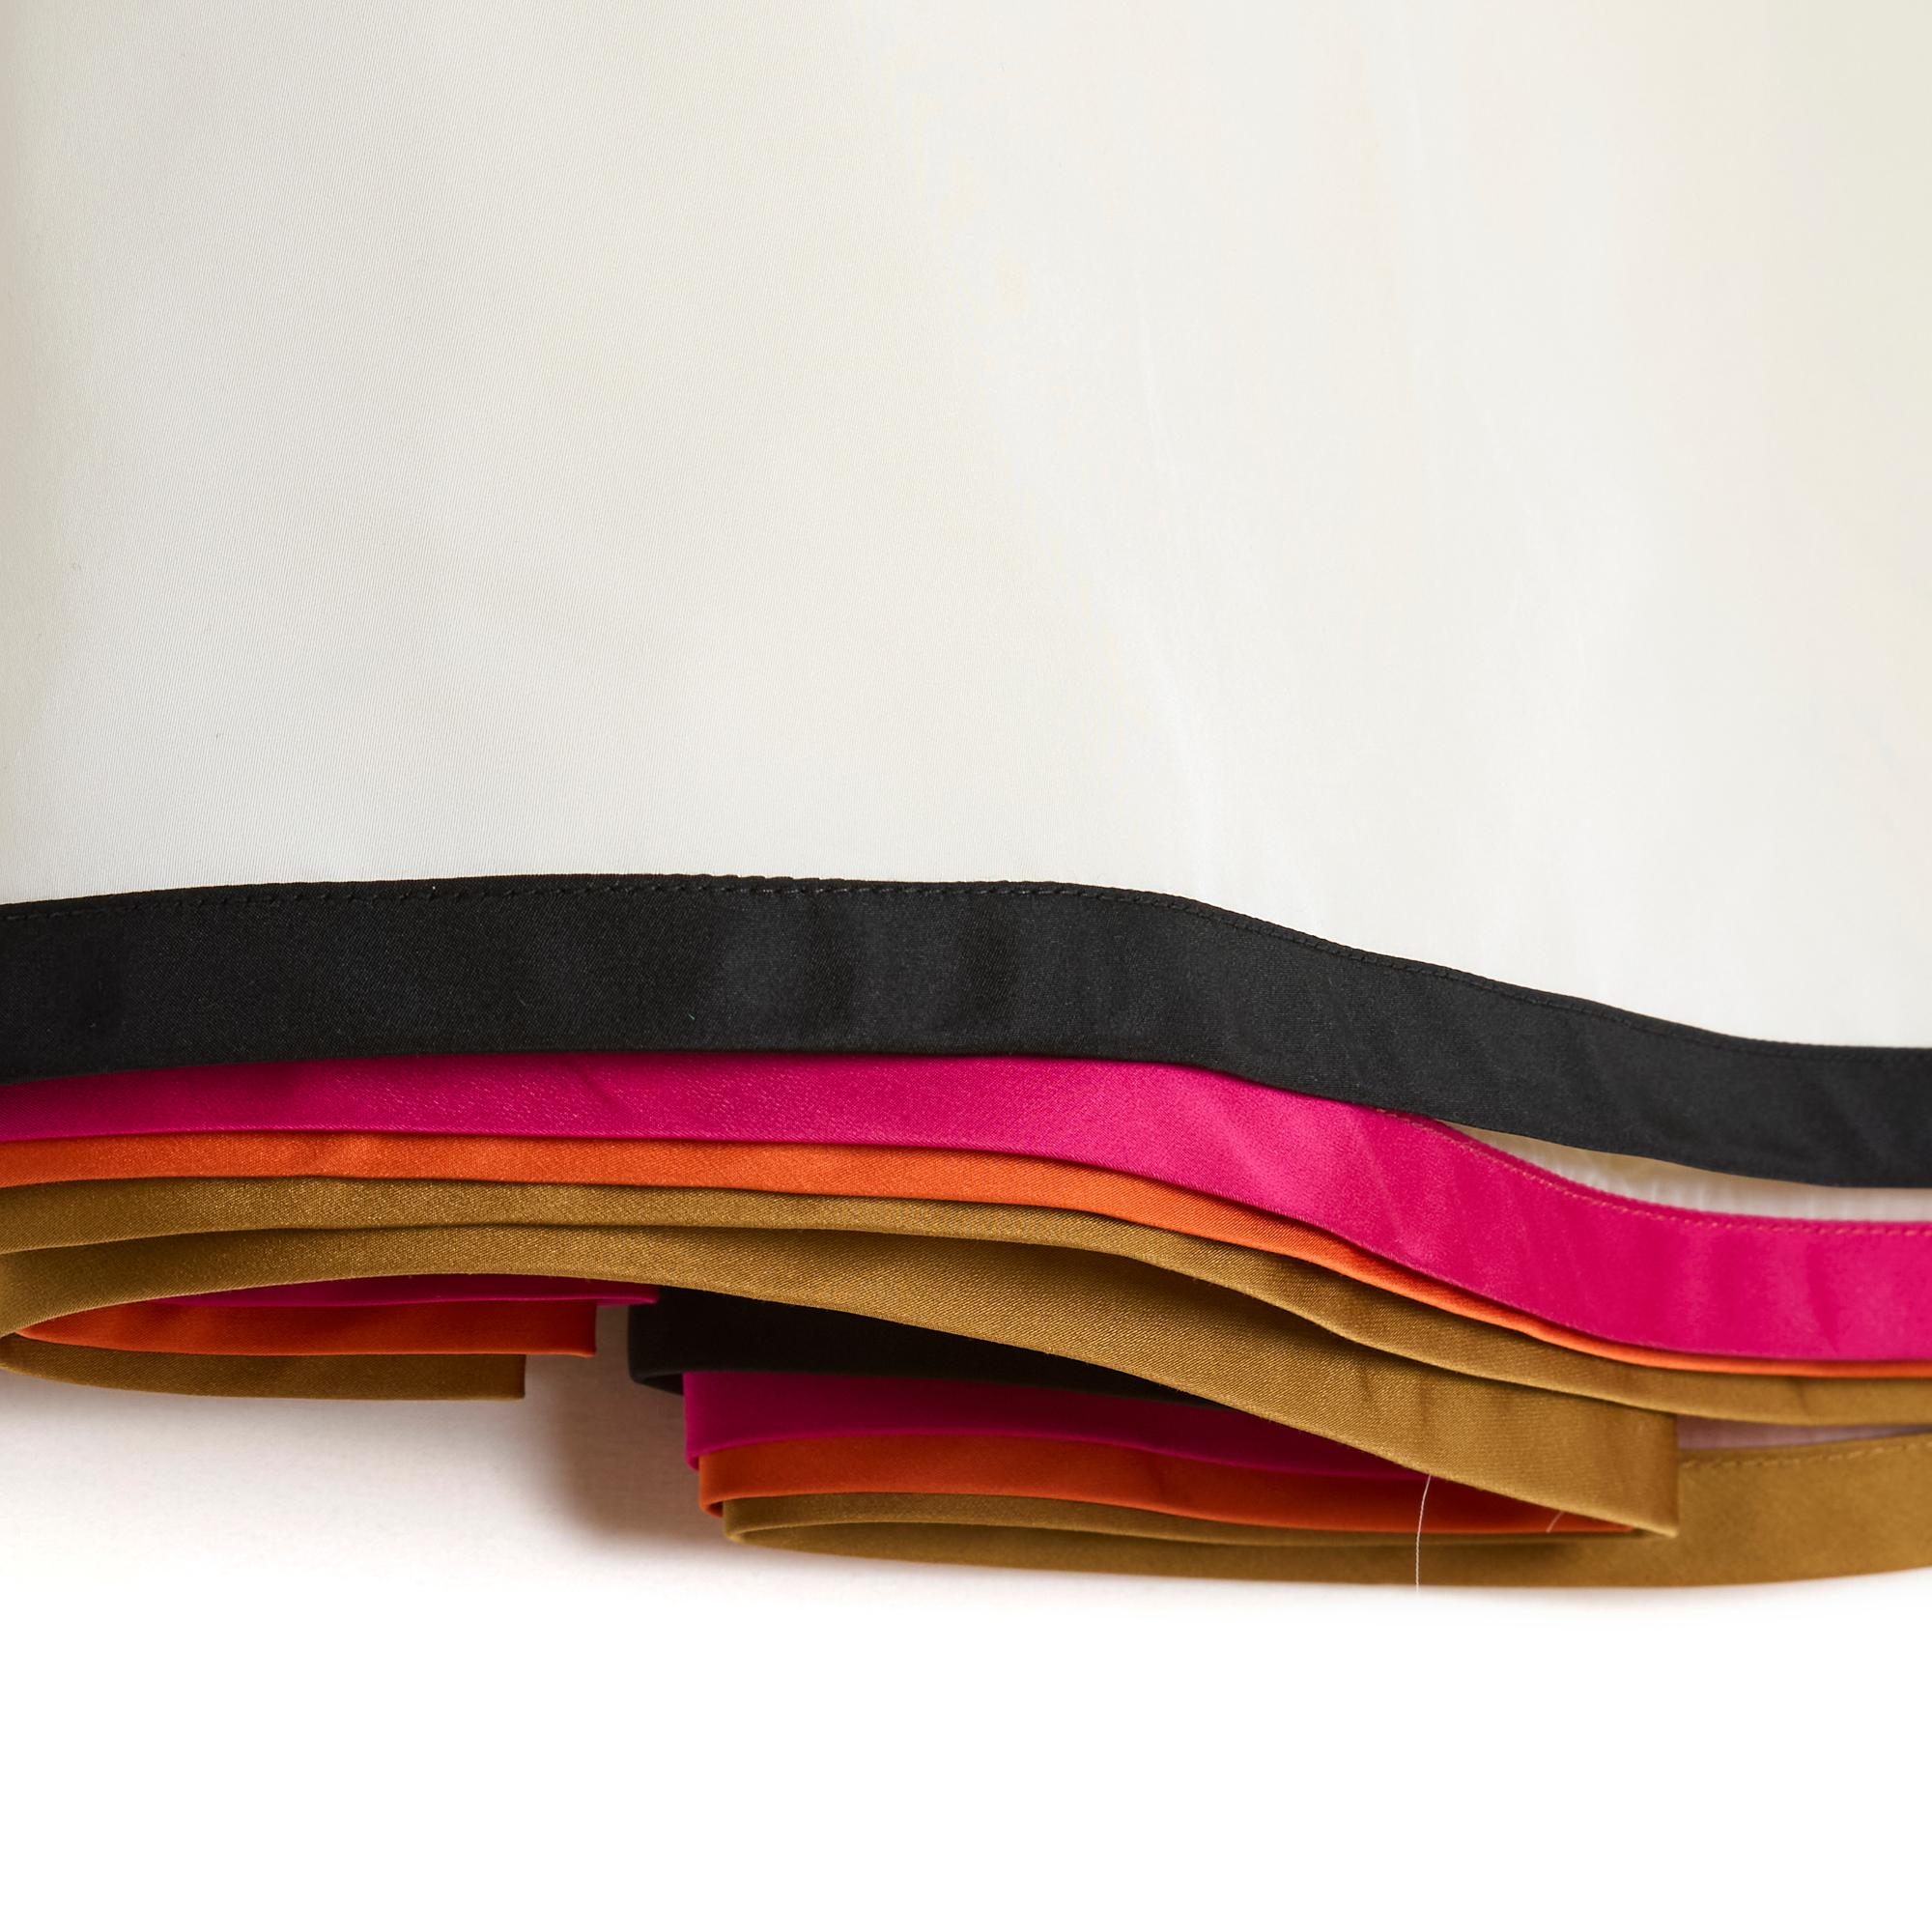 Louis Vuitton Rock (by Marc Jacobs), gerader Schnitt, vorne leicht ausgestellt und hinten in große Falten gelegt, aus mehreren Lagen oder Rüschen zusammengesetzt, die unteren 3 aus hellem ecrufarbenem Polyamid-Krepp, gesäumt von braunen,